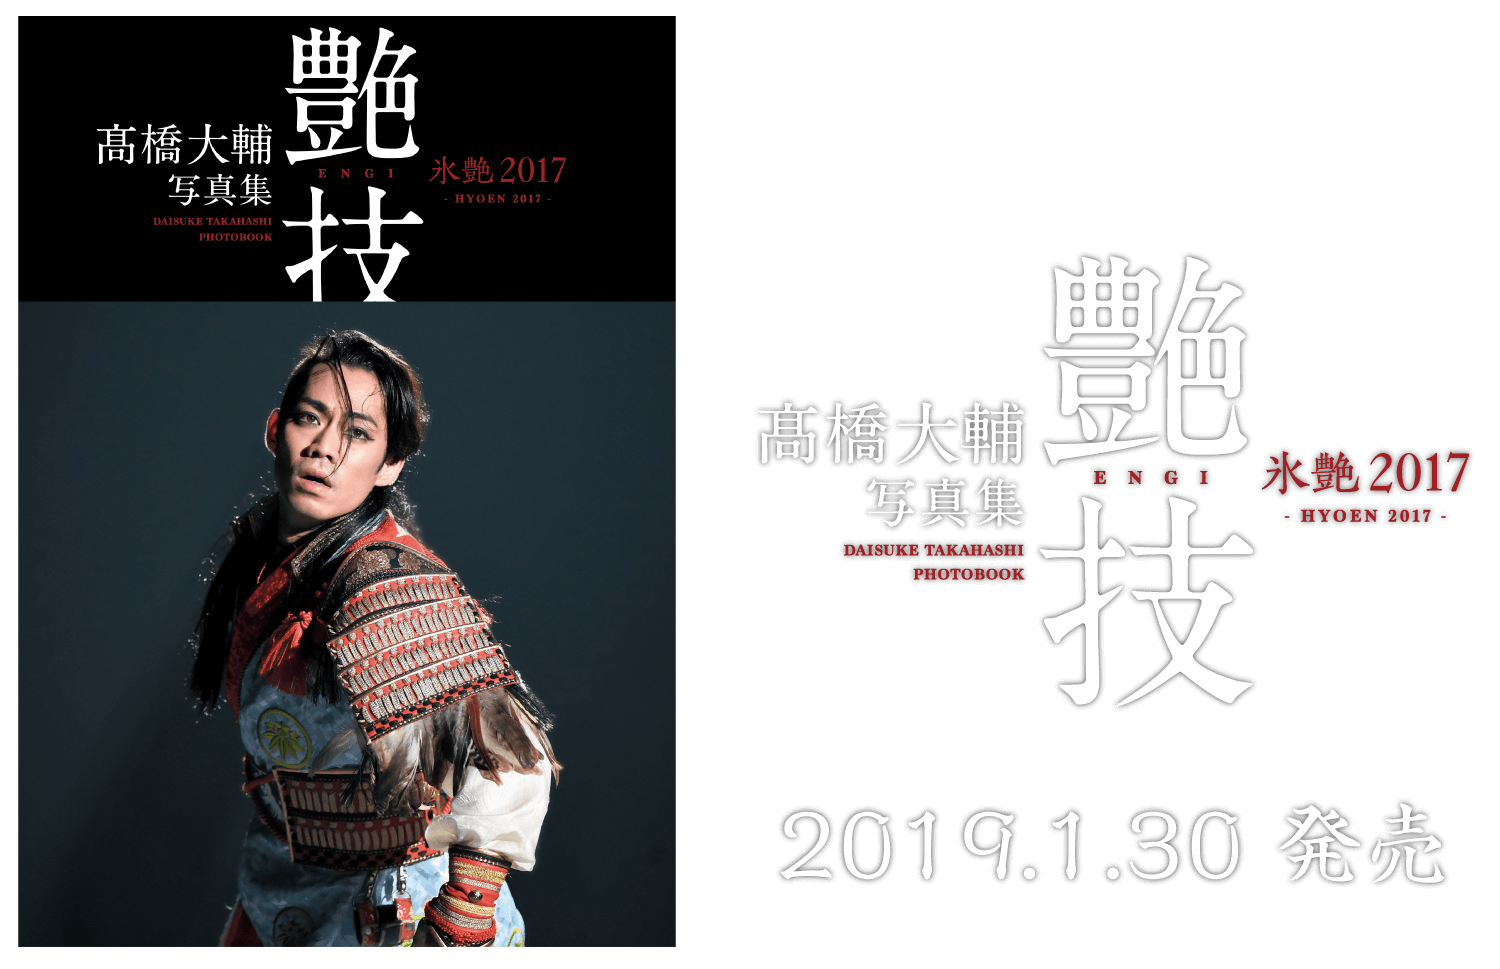 髙橋大輔 写真集 氷艶2017「艶技」2019.1.30発売